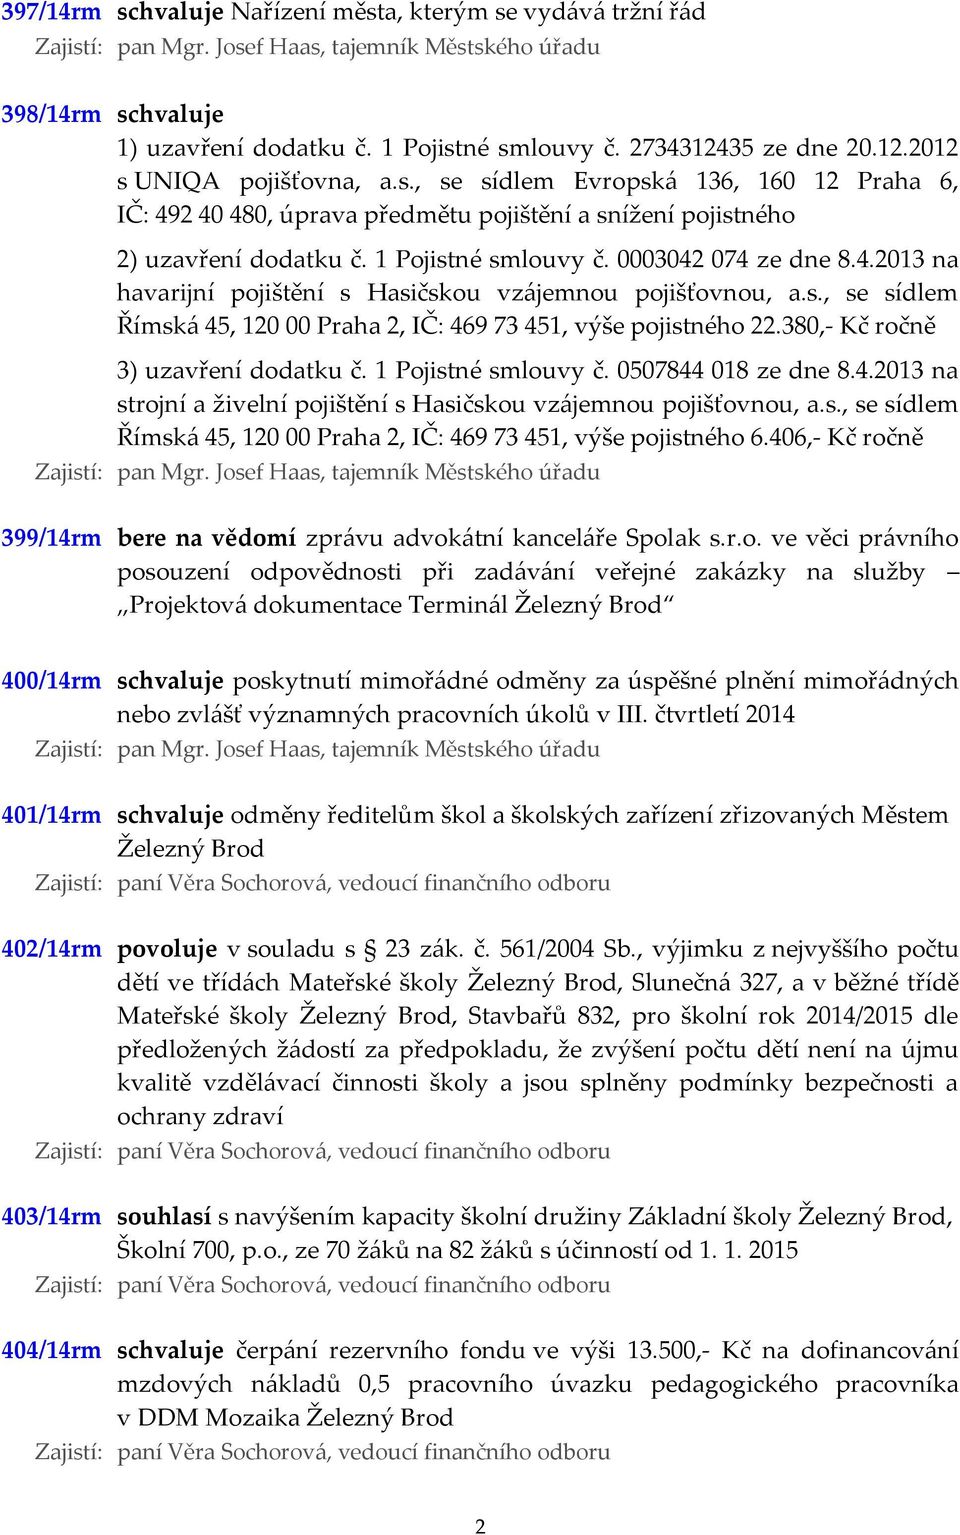 1 Pojistné smlouvy č. 0003042 074 ze dne 8.4.2013 na havarijní pojištění s Hasičskou vzájemnou pojišťovnou, a.s., se sídlem Římská 45, 120 00 Praha 2, IČ: 469 73 451, výše pojistného 22.